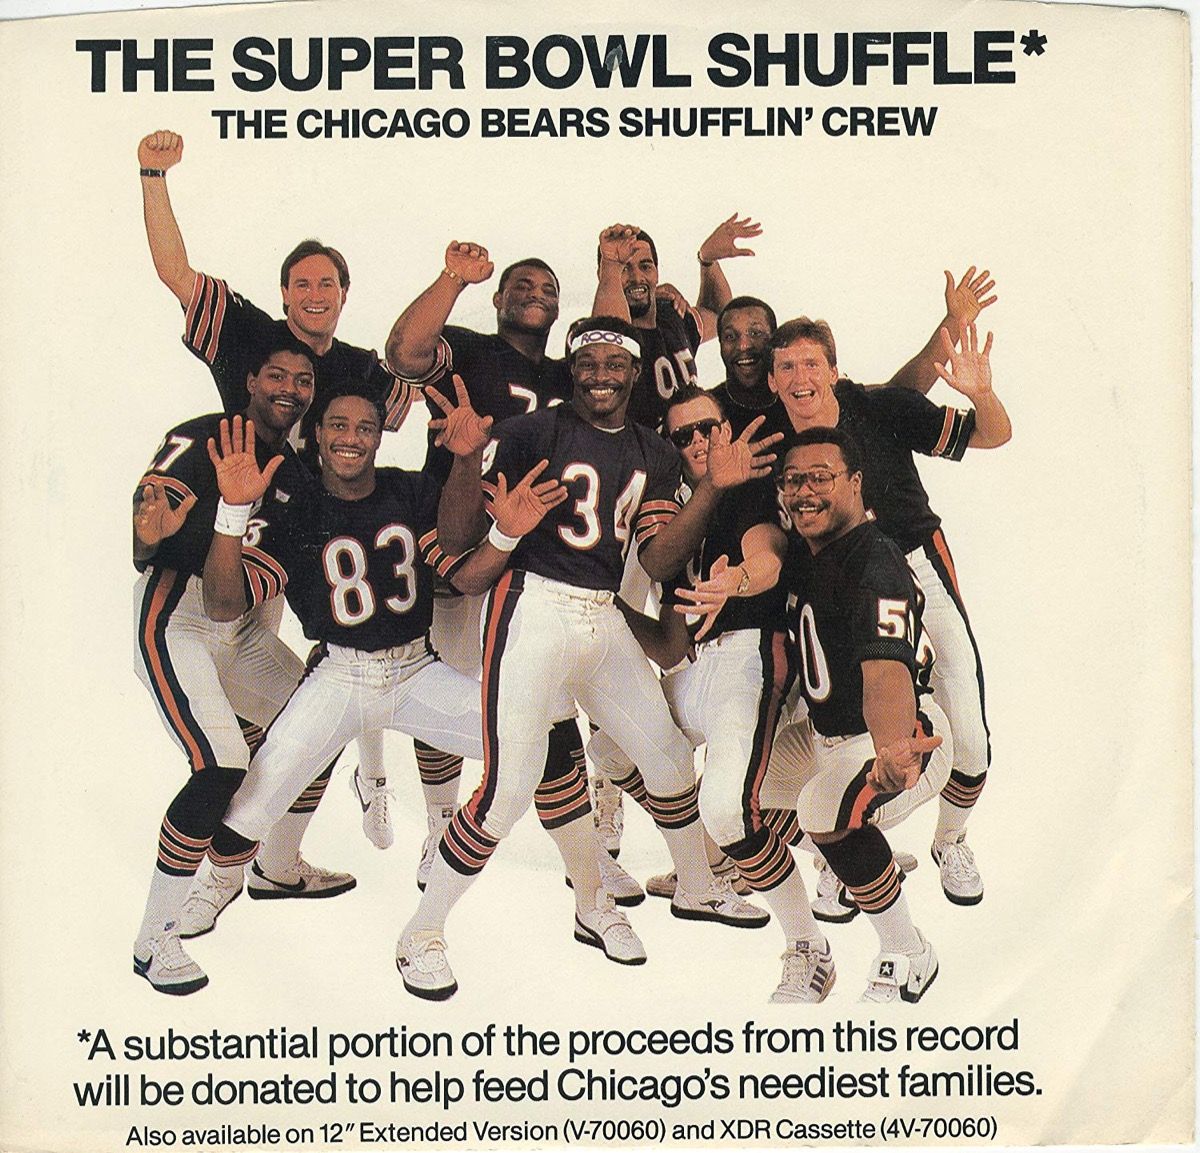 Super Bowl Shuffle albumomslag med Chicago Bears